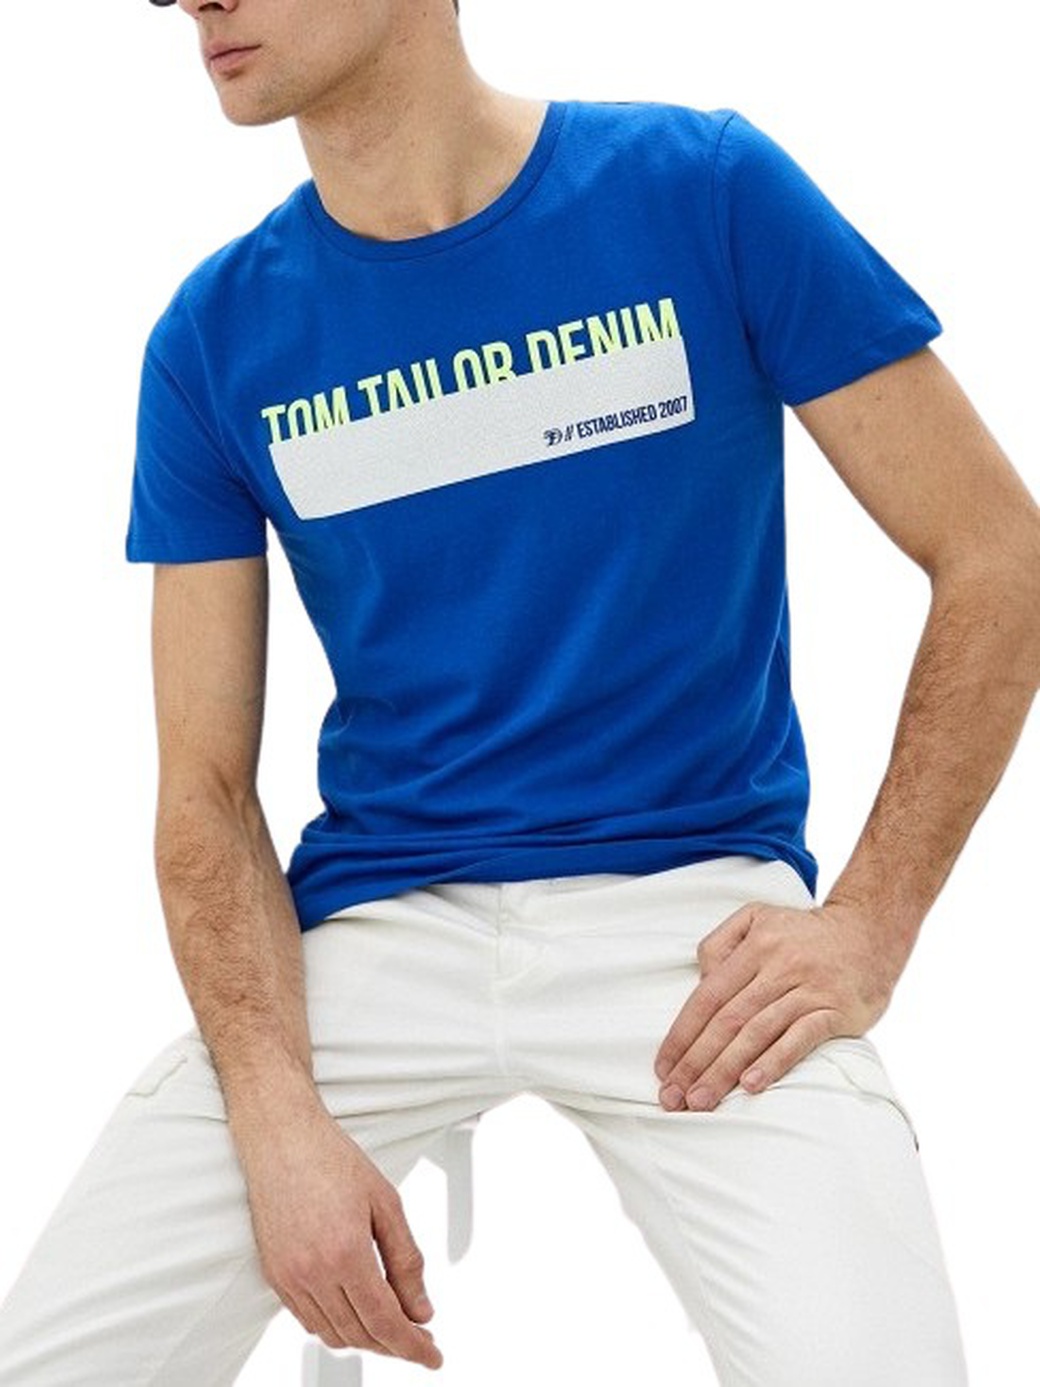 Футболка Tom Tailor с надписями 1016303.xx.12, синий фото